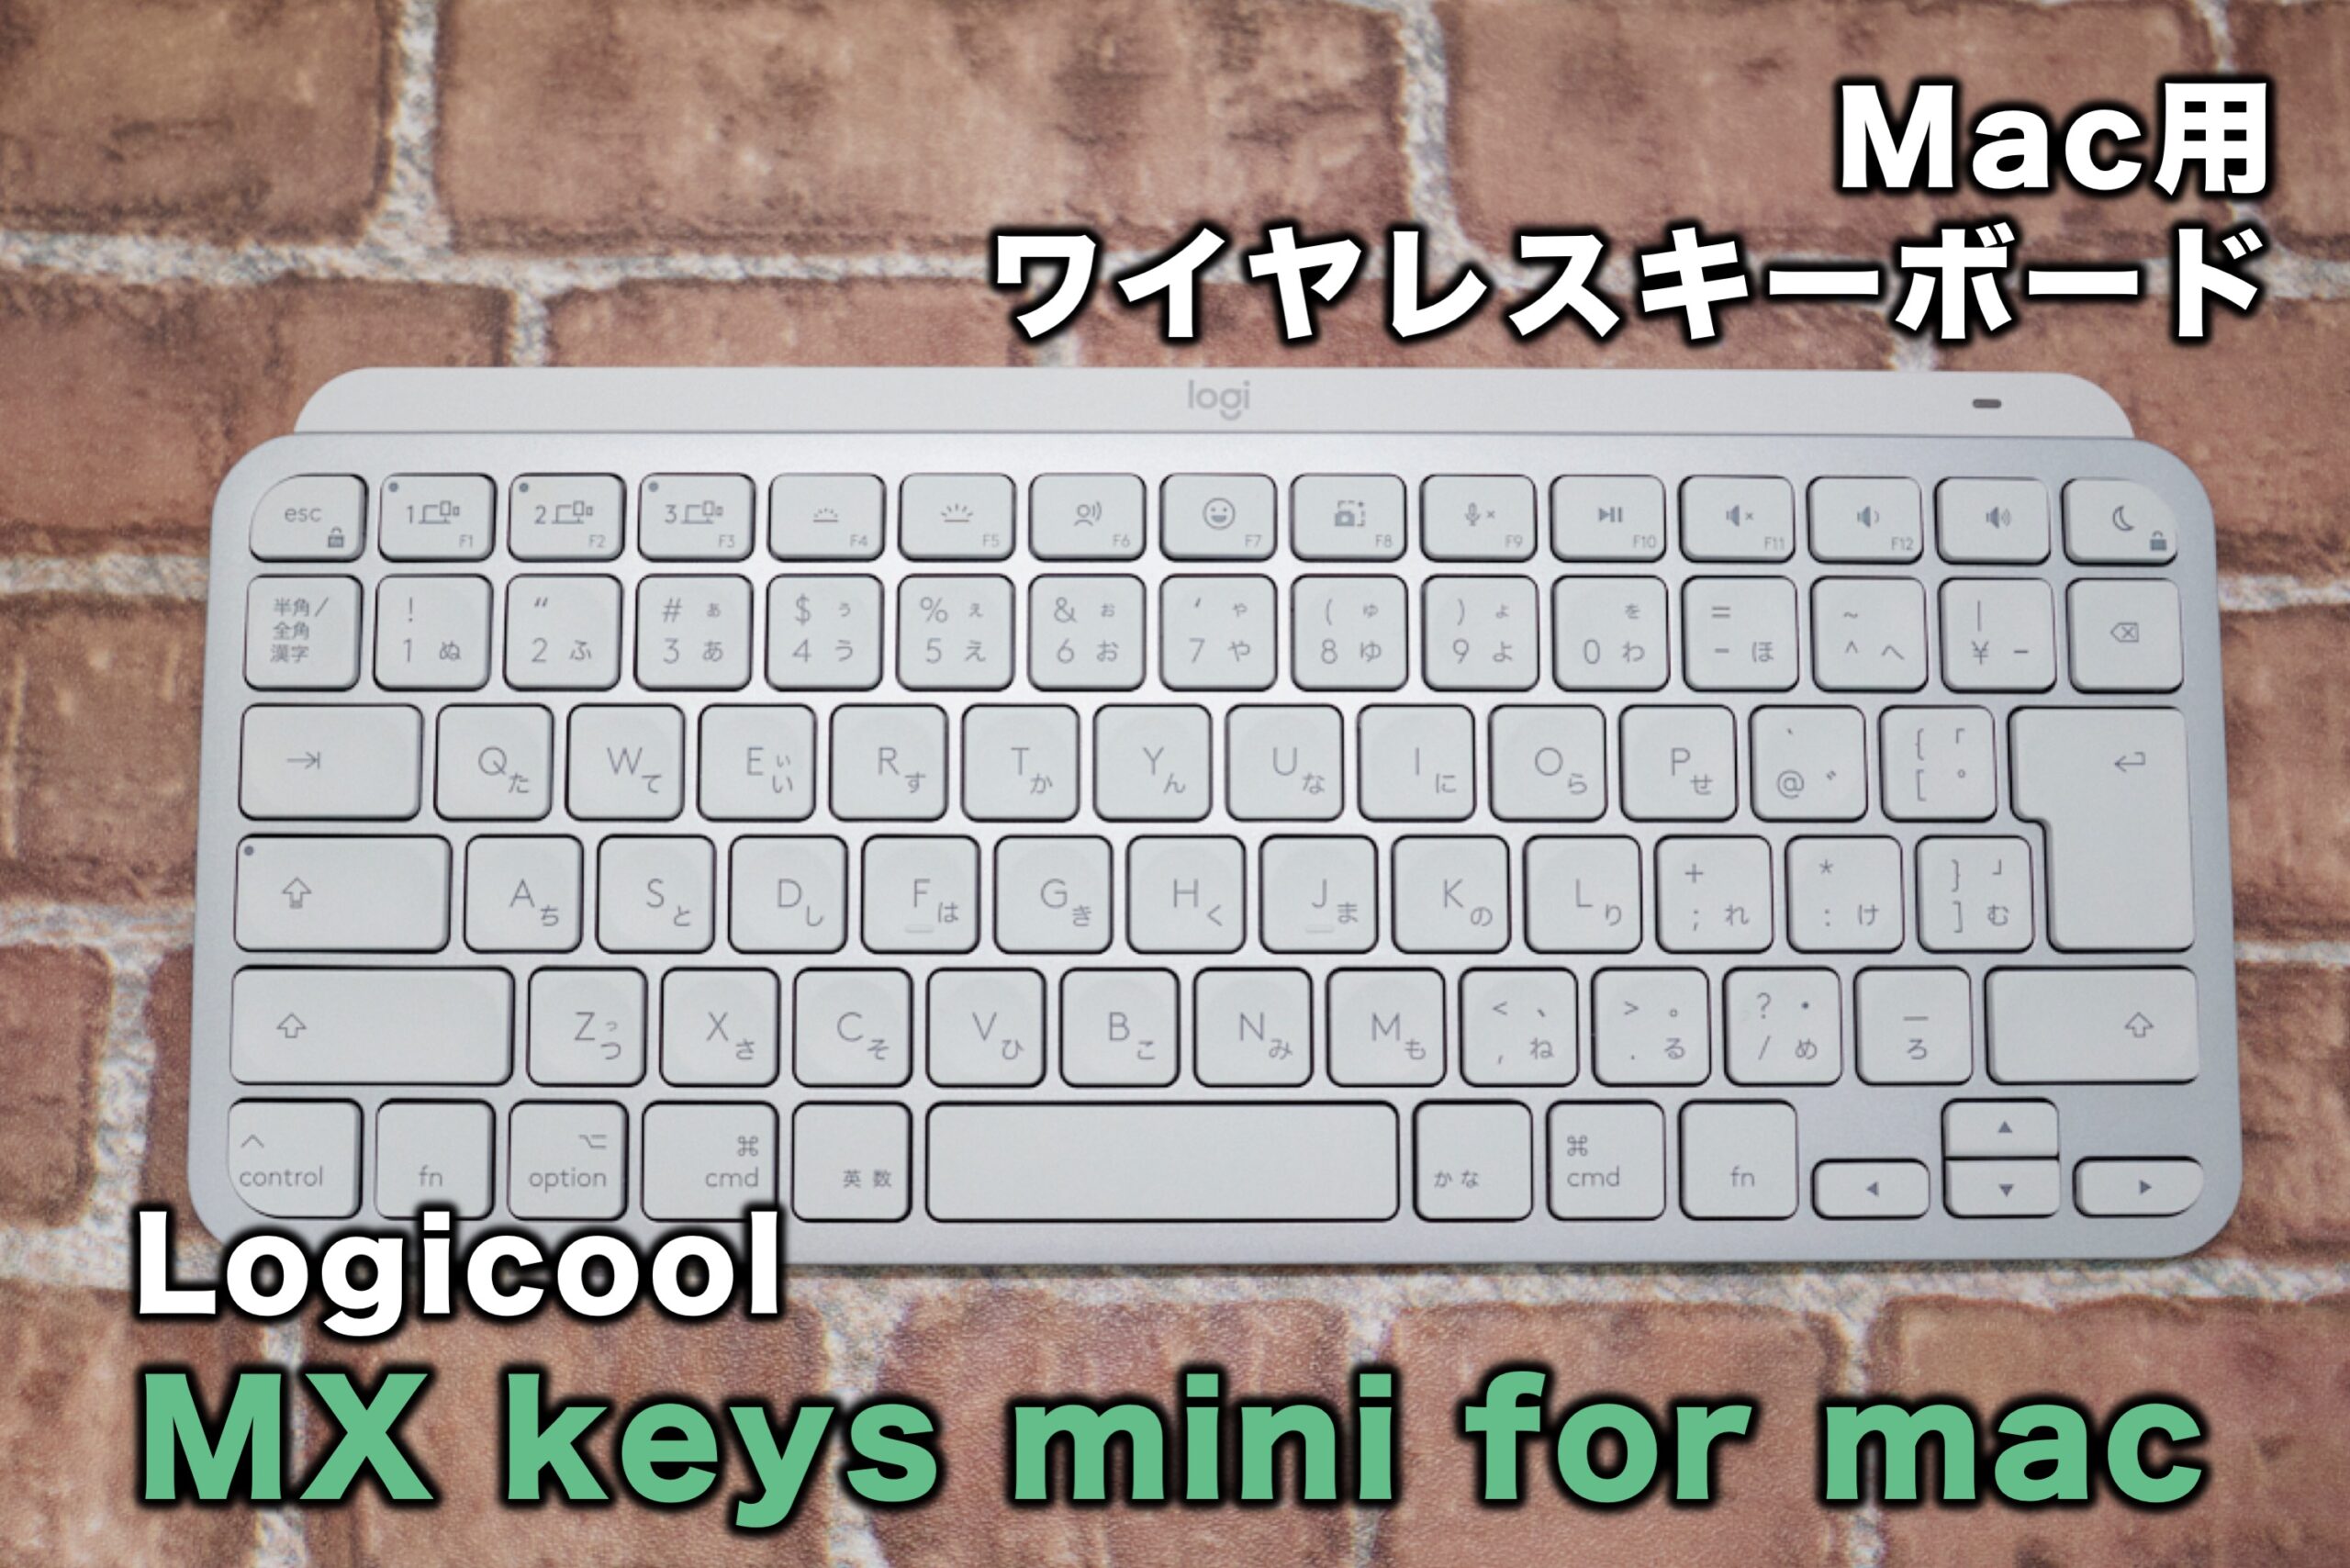 MX keys mini for mac の使用感 | blue green photography